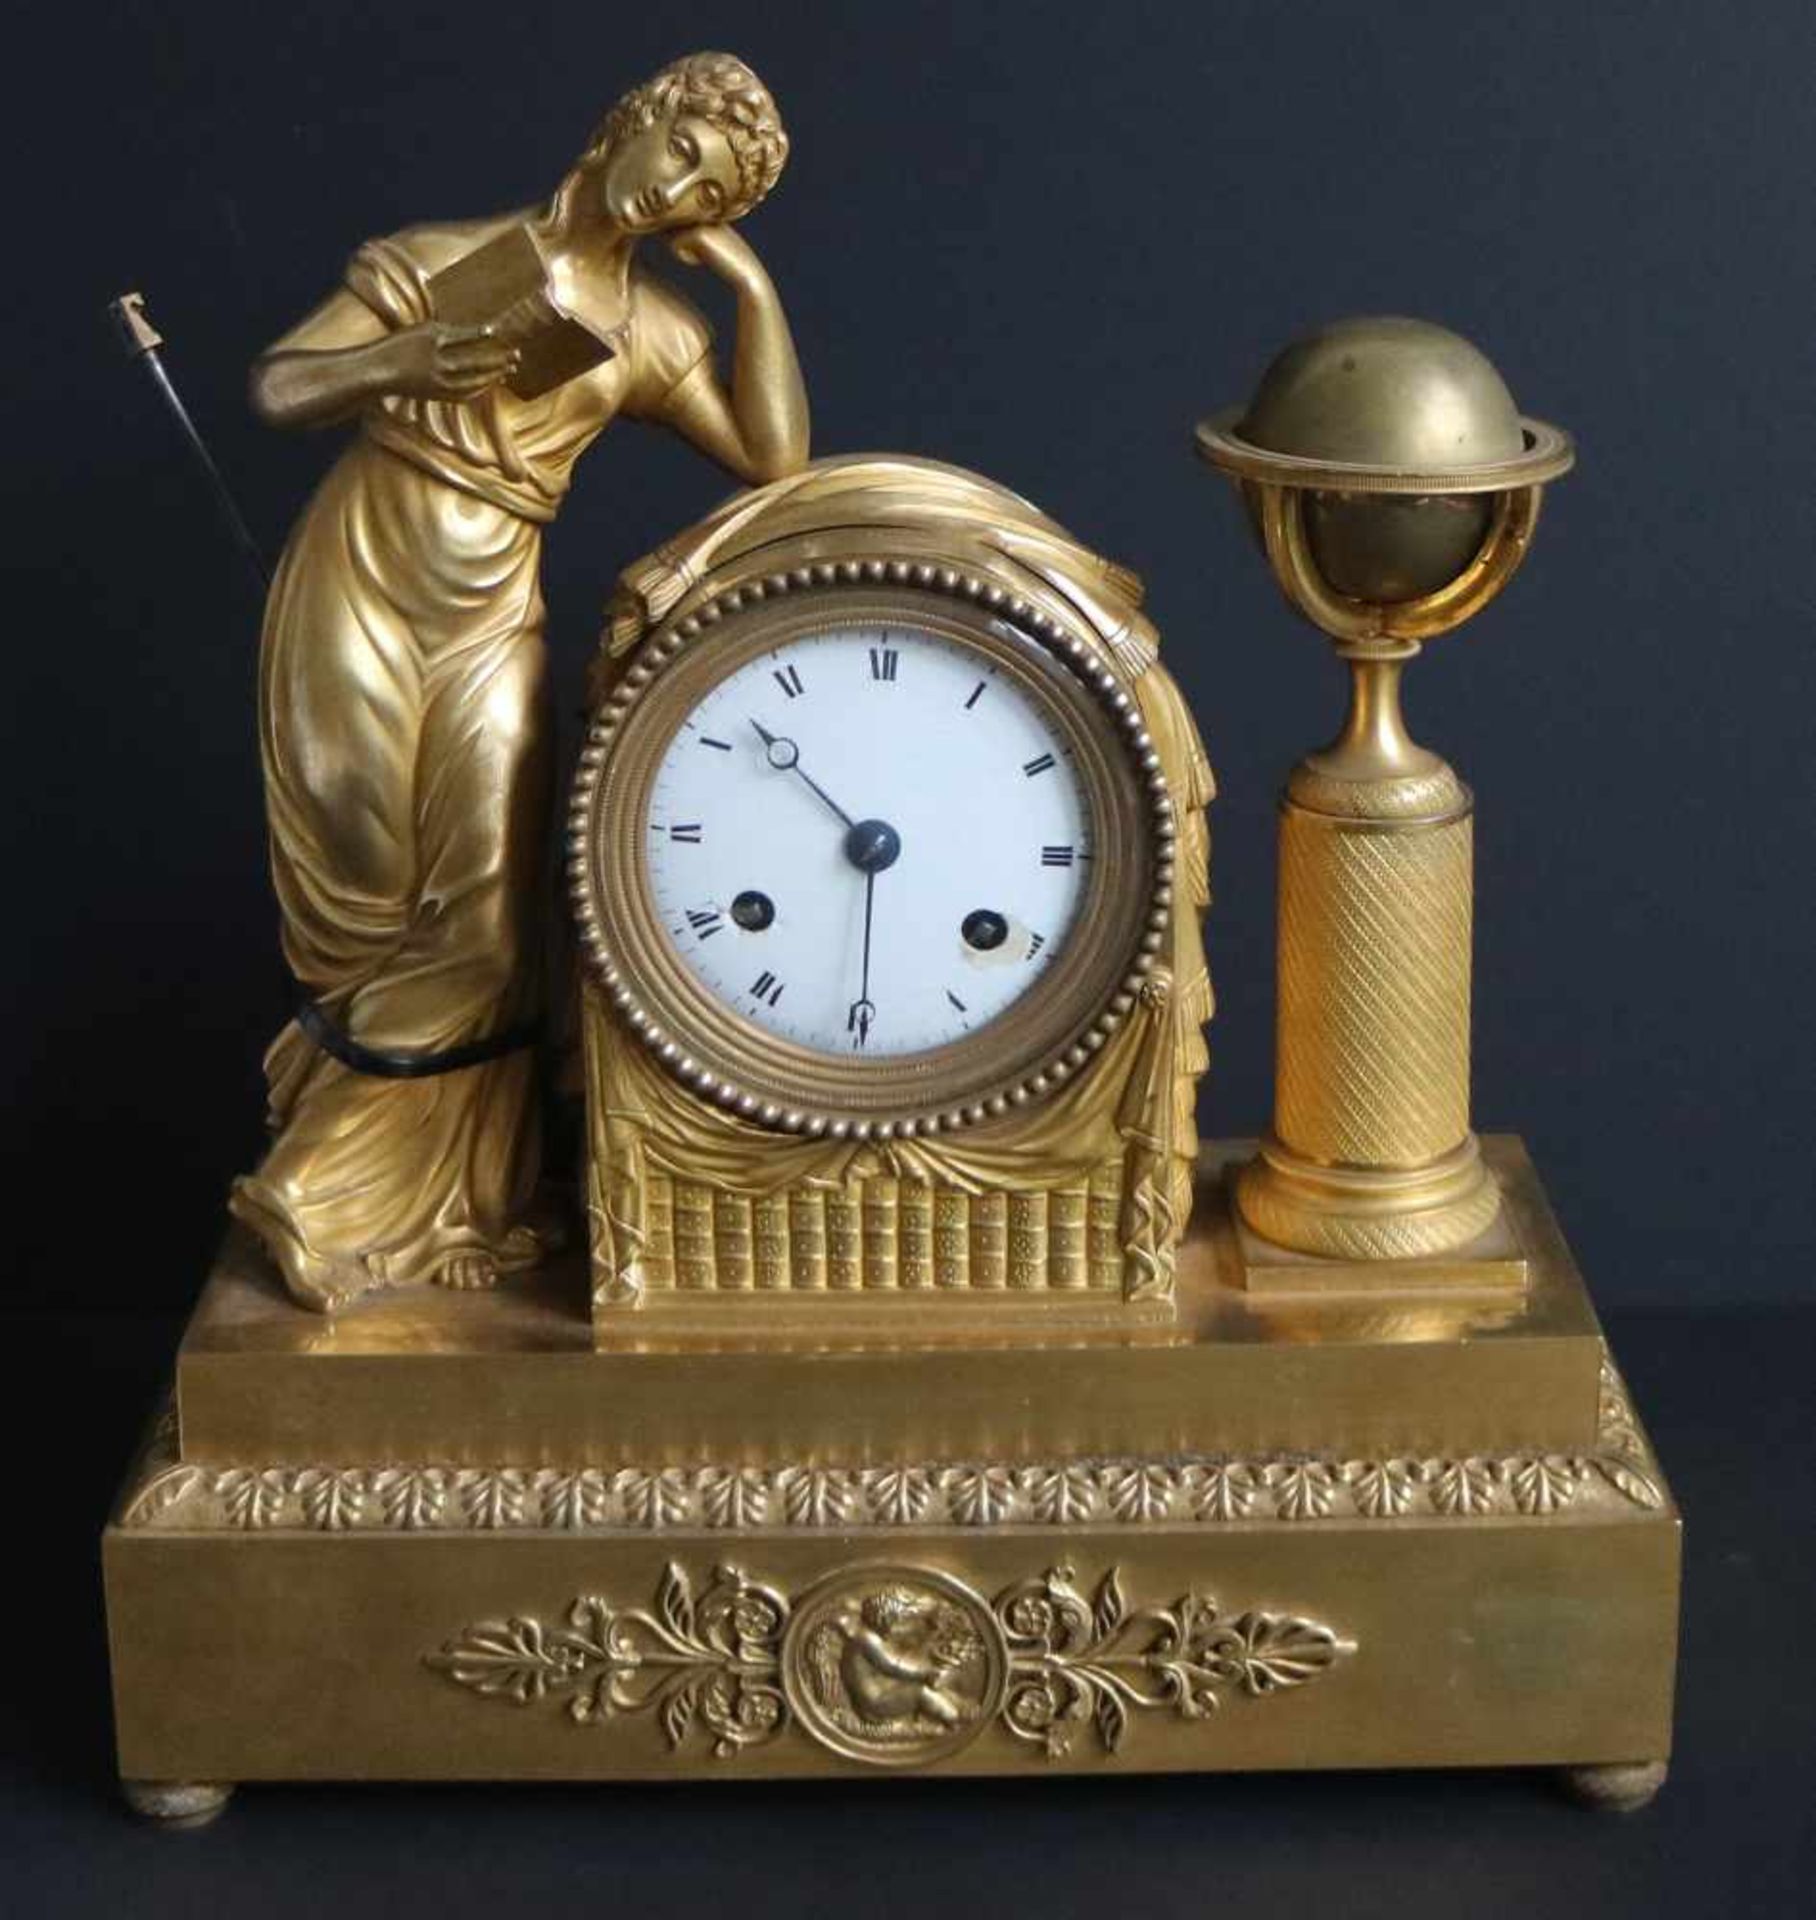 Fire-gilded Empire clockFire-gilded Empire clockH 32 L 29 cm